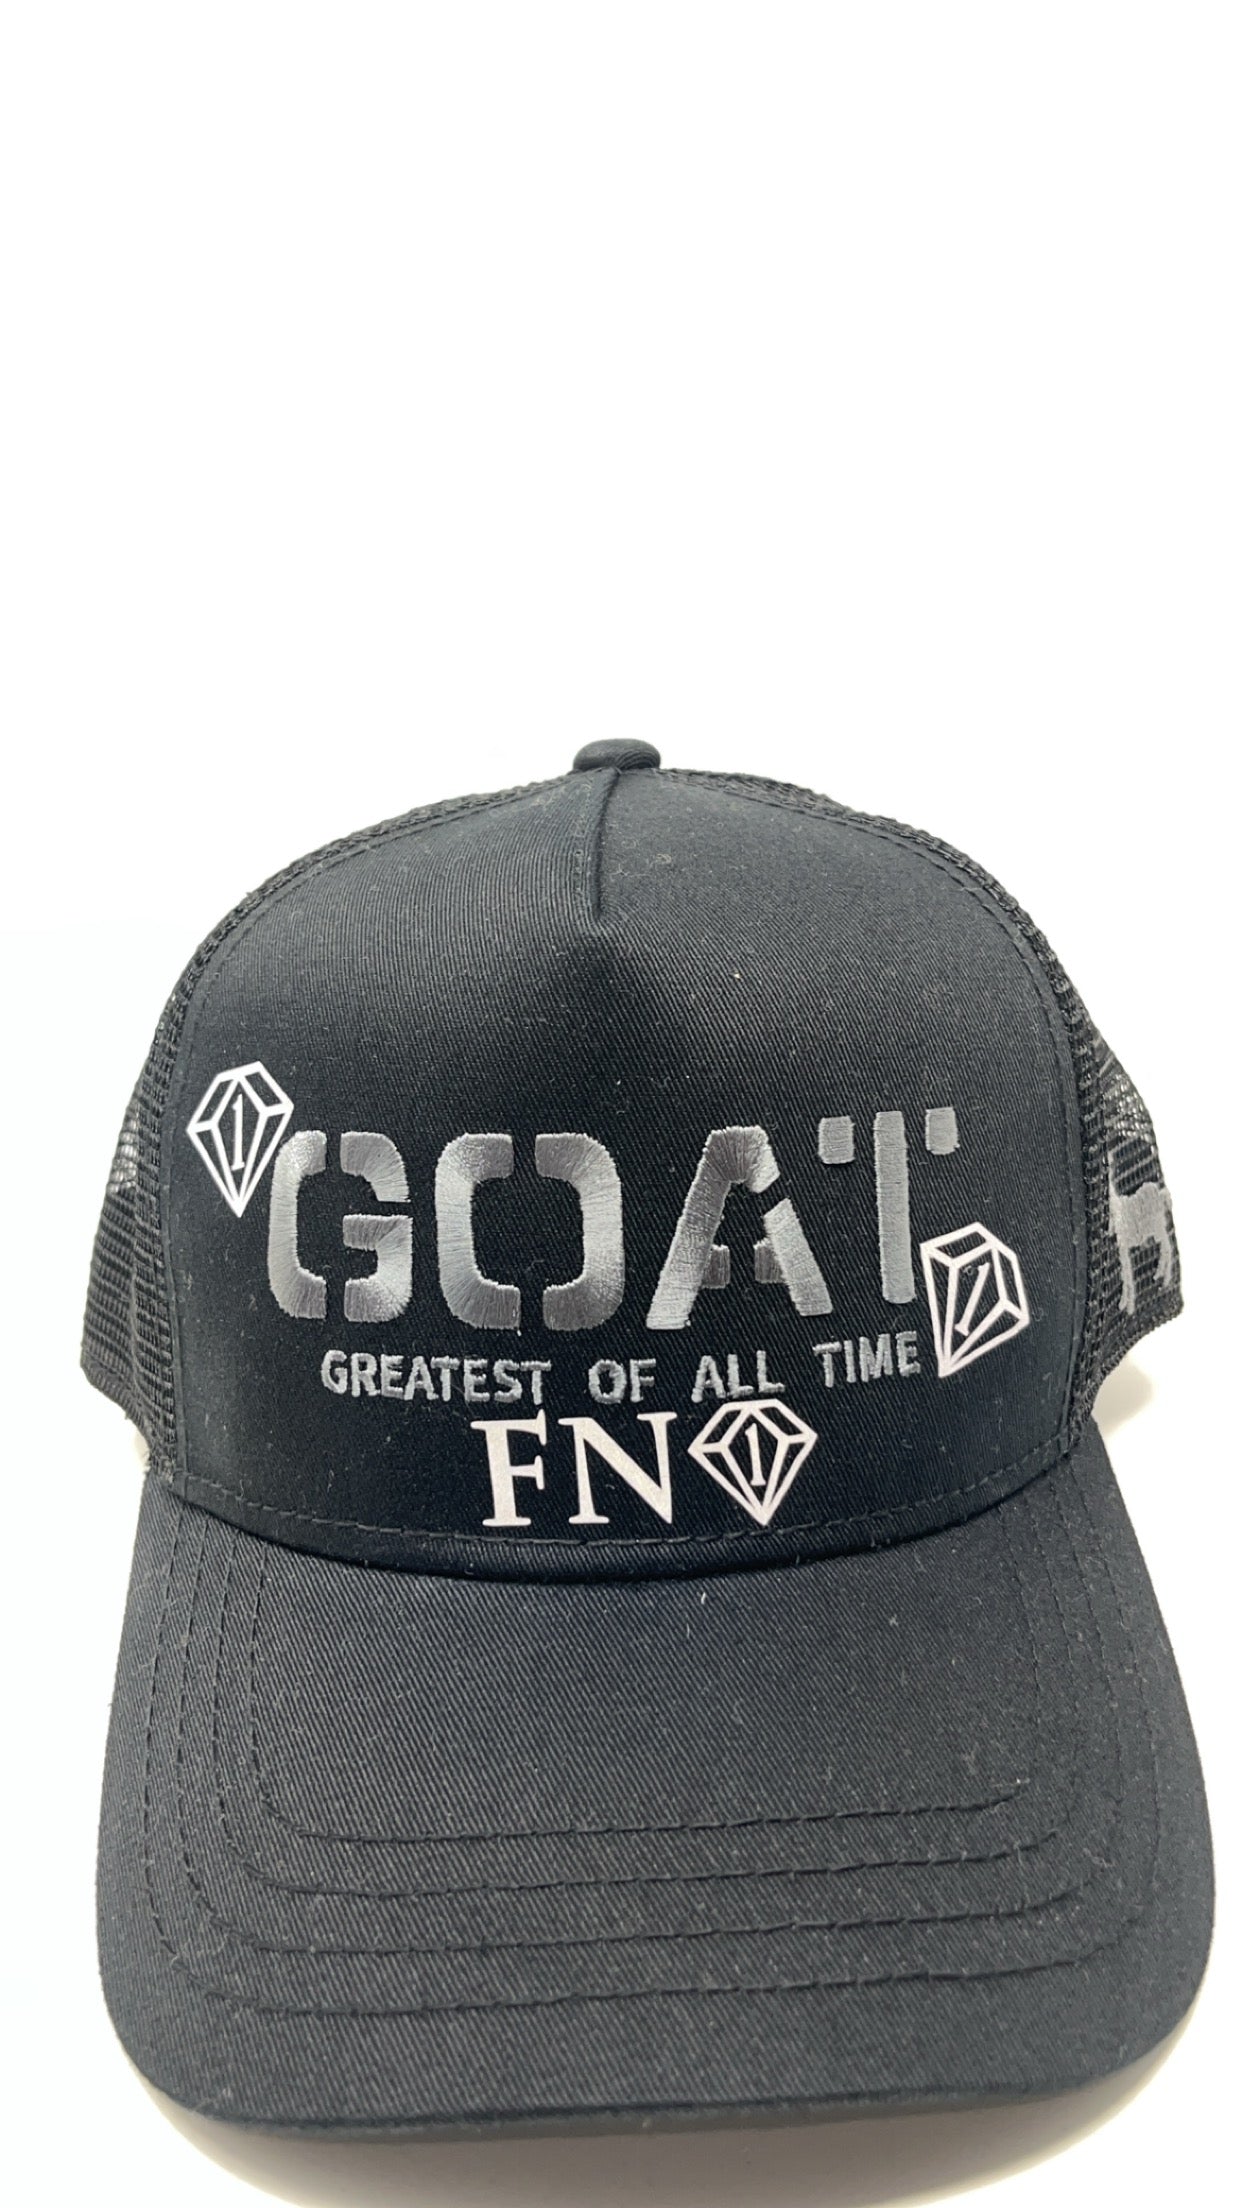 G.O.A.T. Trucker hat